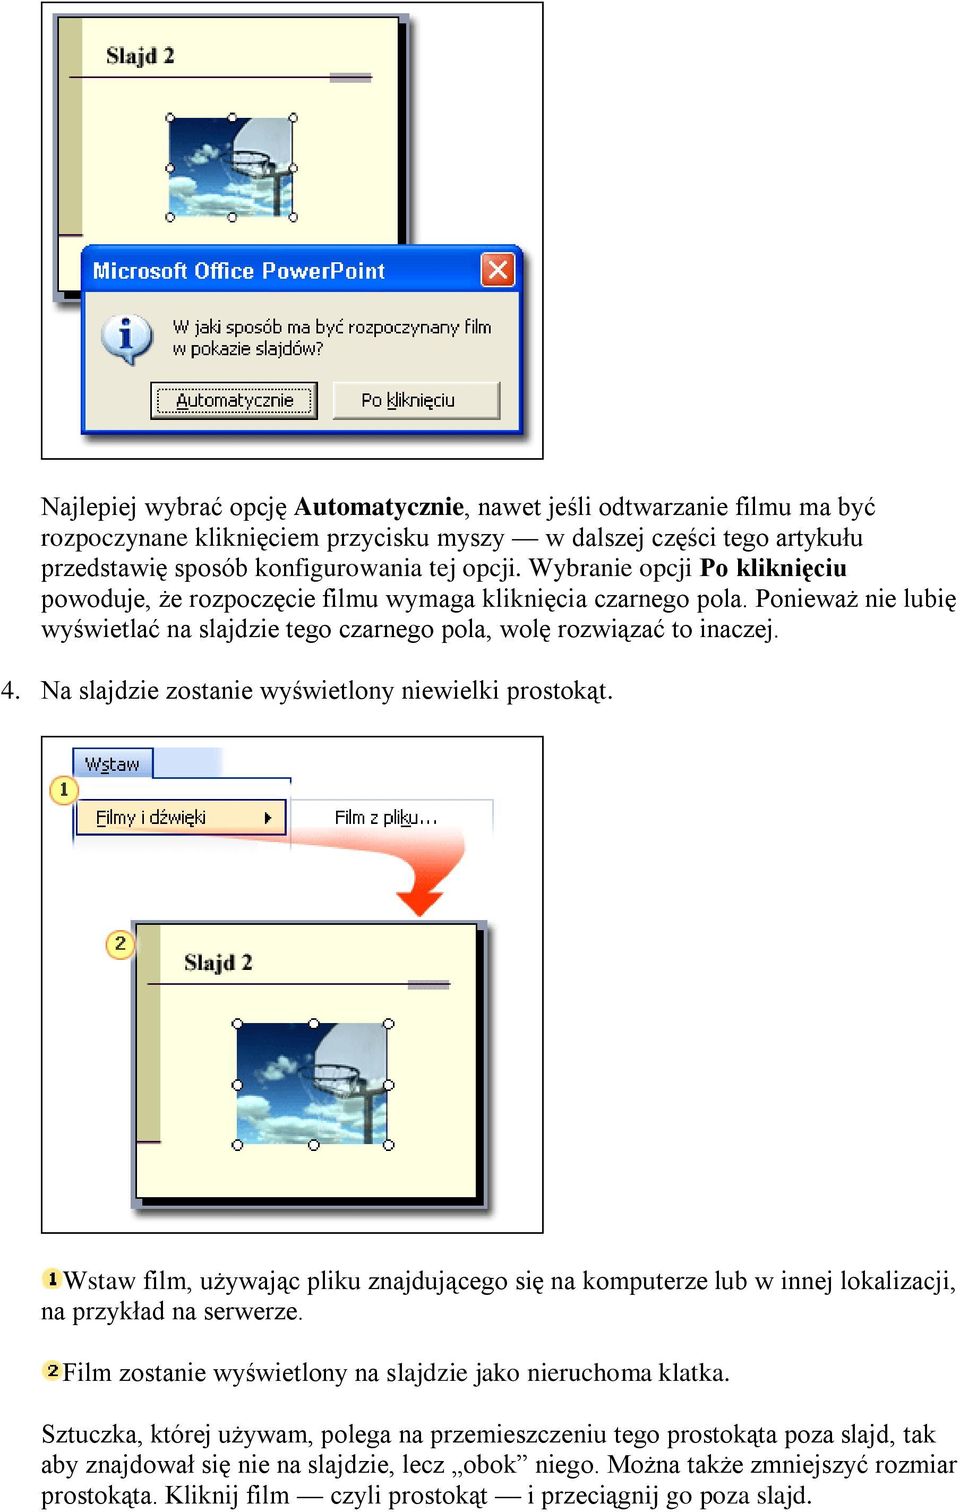 Na slajdzie zostanie wyświetlony niewielki prostokąt. Wstaw film, używając pliku znajdującego się na komputerze lub w innej lokalizacji, na przykład na serwerze.